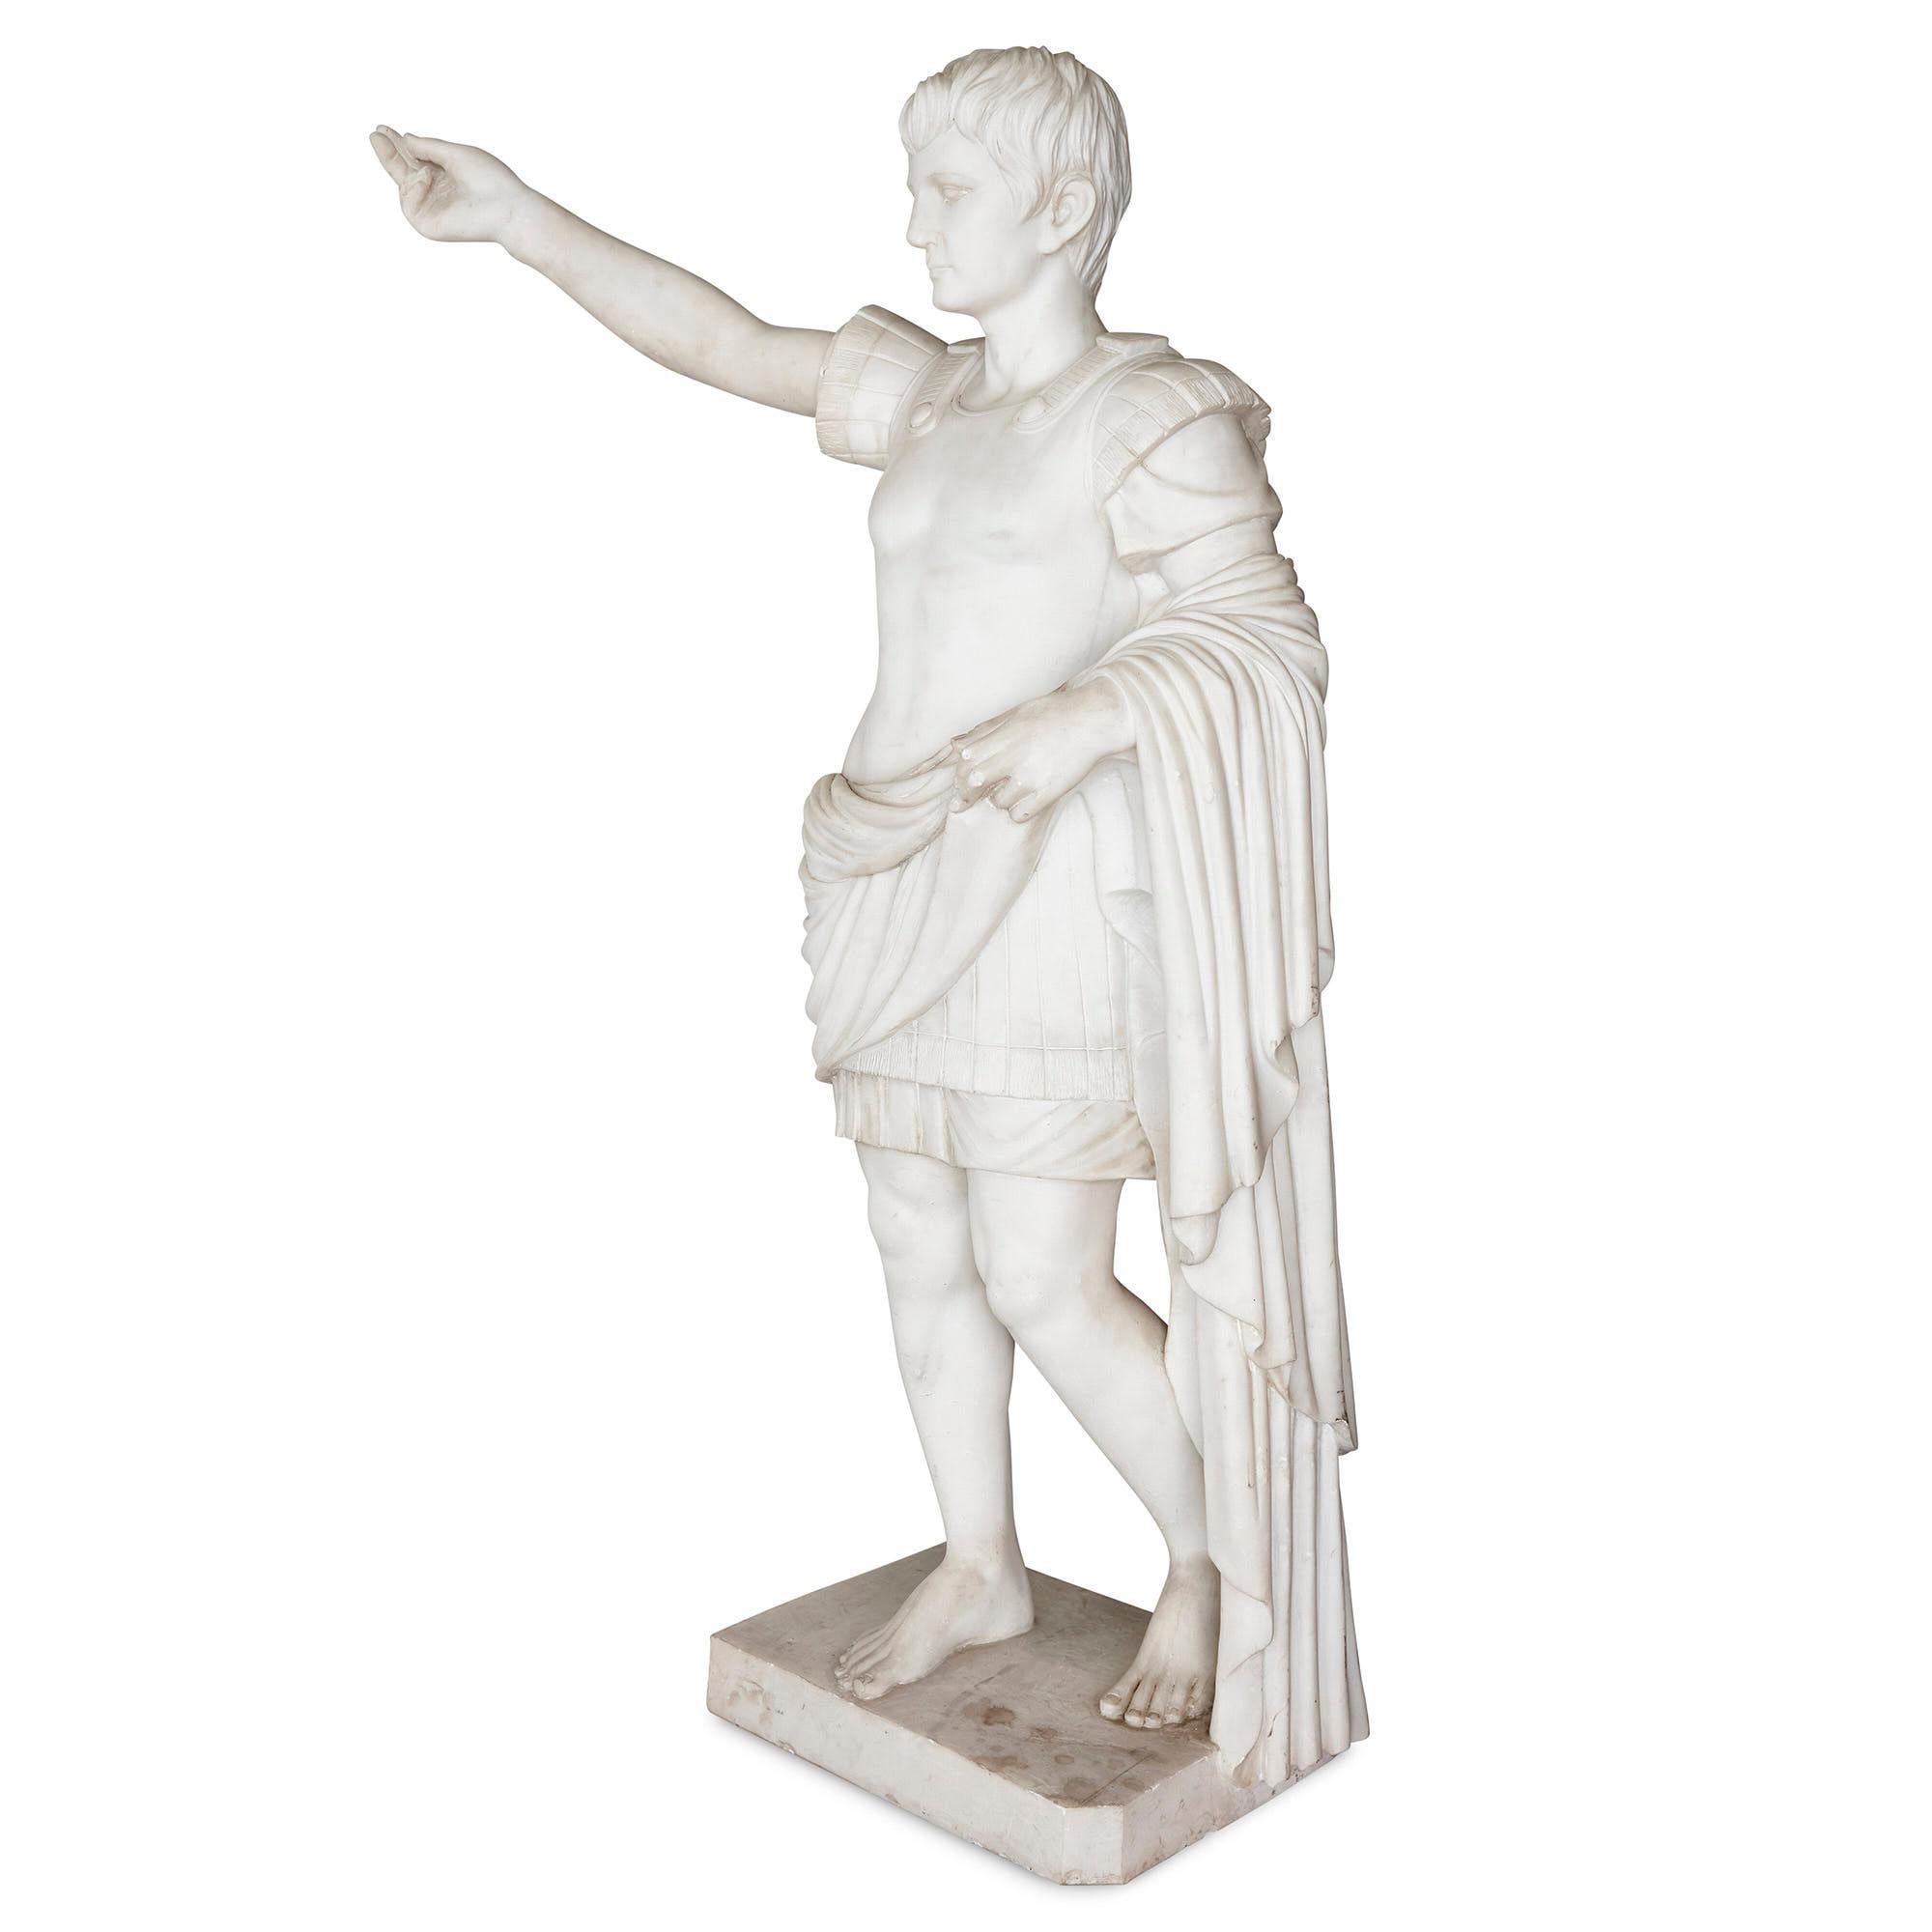 Grande figure antique en marbre sculpté de César Auguste
Italien, début du 20e siècle
Mesures : Hauteur 186 cm, largeur 118 cm, profondeur 44 cm

Connue sous le nom d'